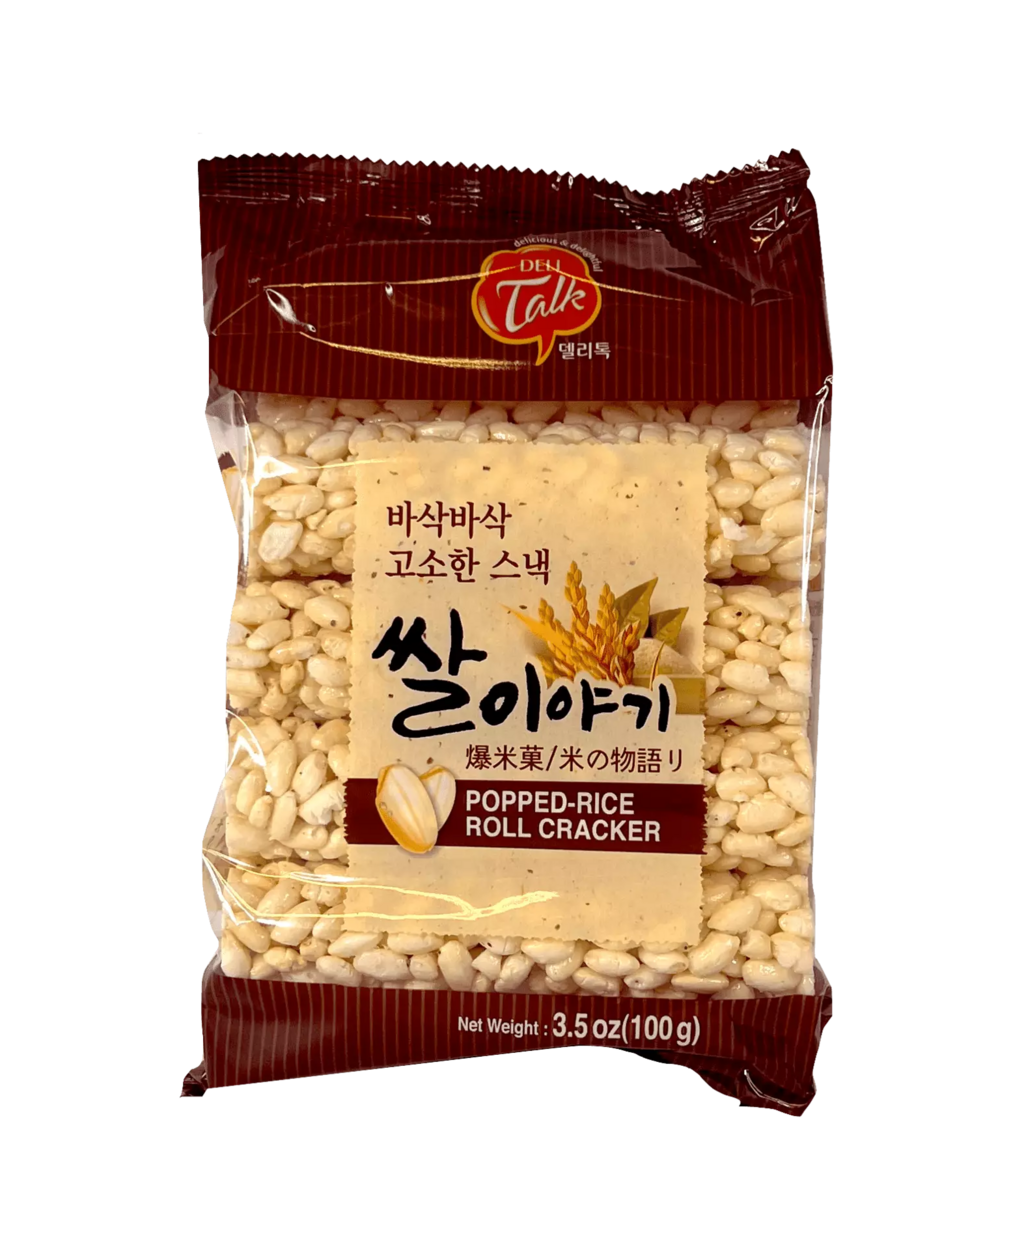 爆米菓 100g Delitalk 韩国